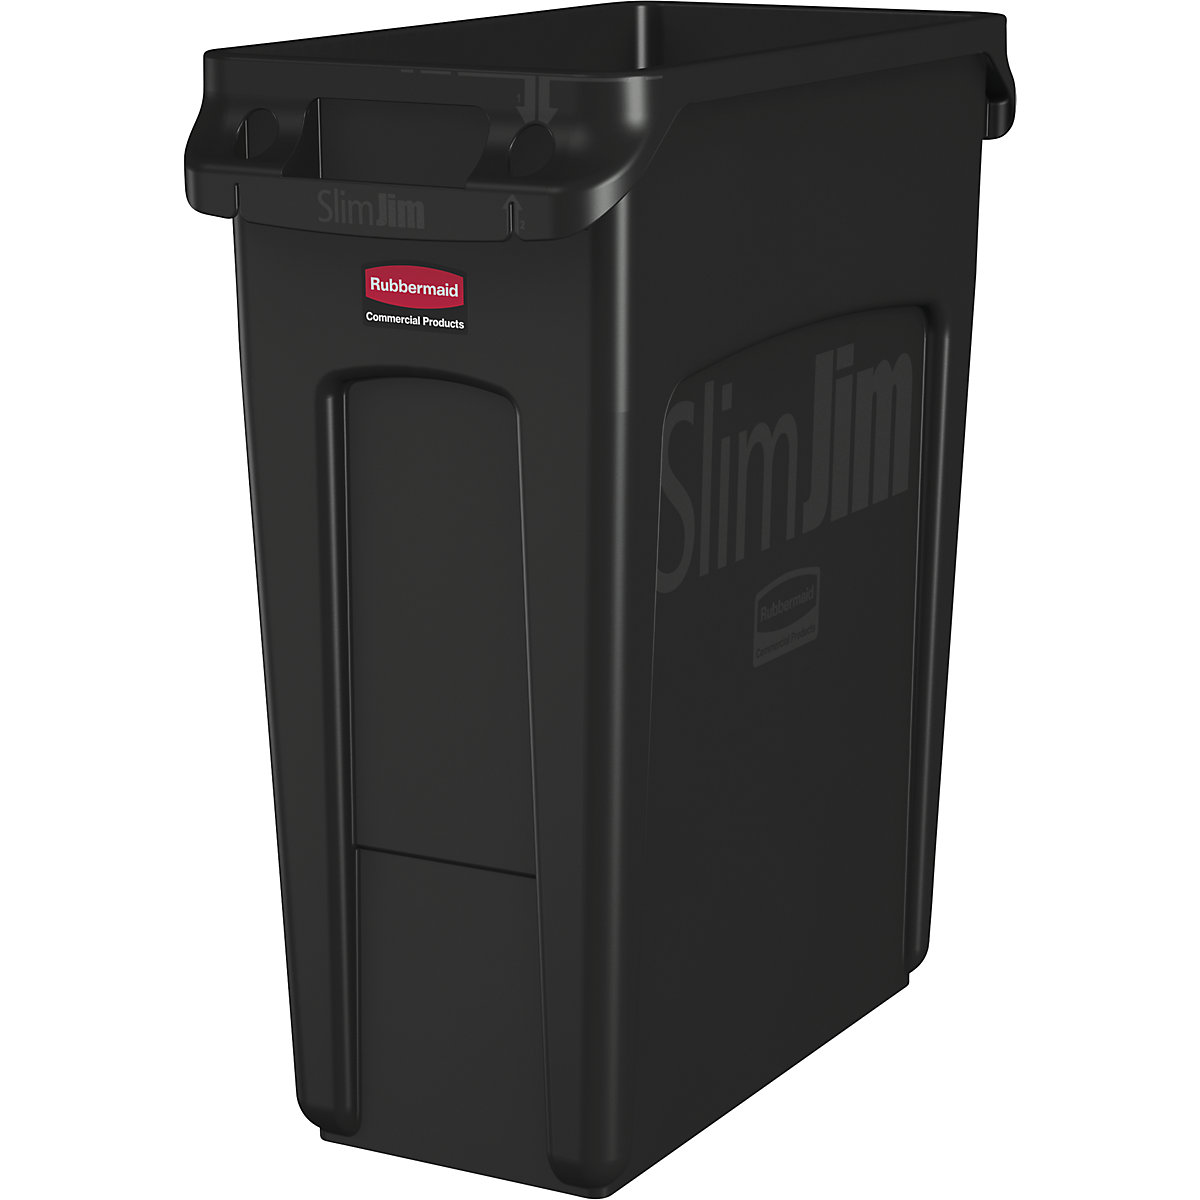 Contenitore per la raccolta differenziata/cestino per rifiuti SLIM JIM® - Rubbermaid